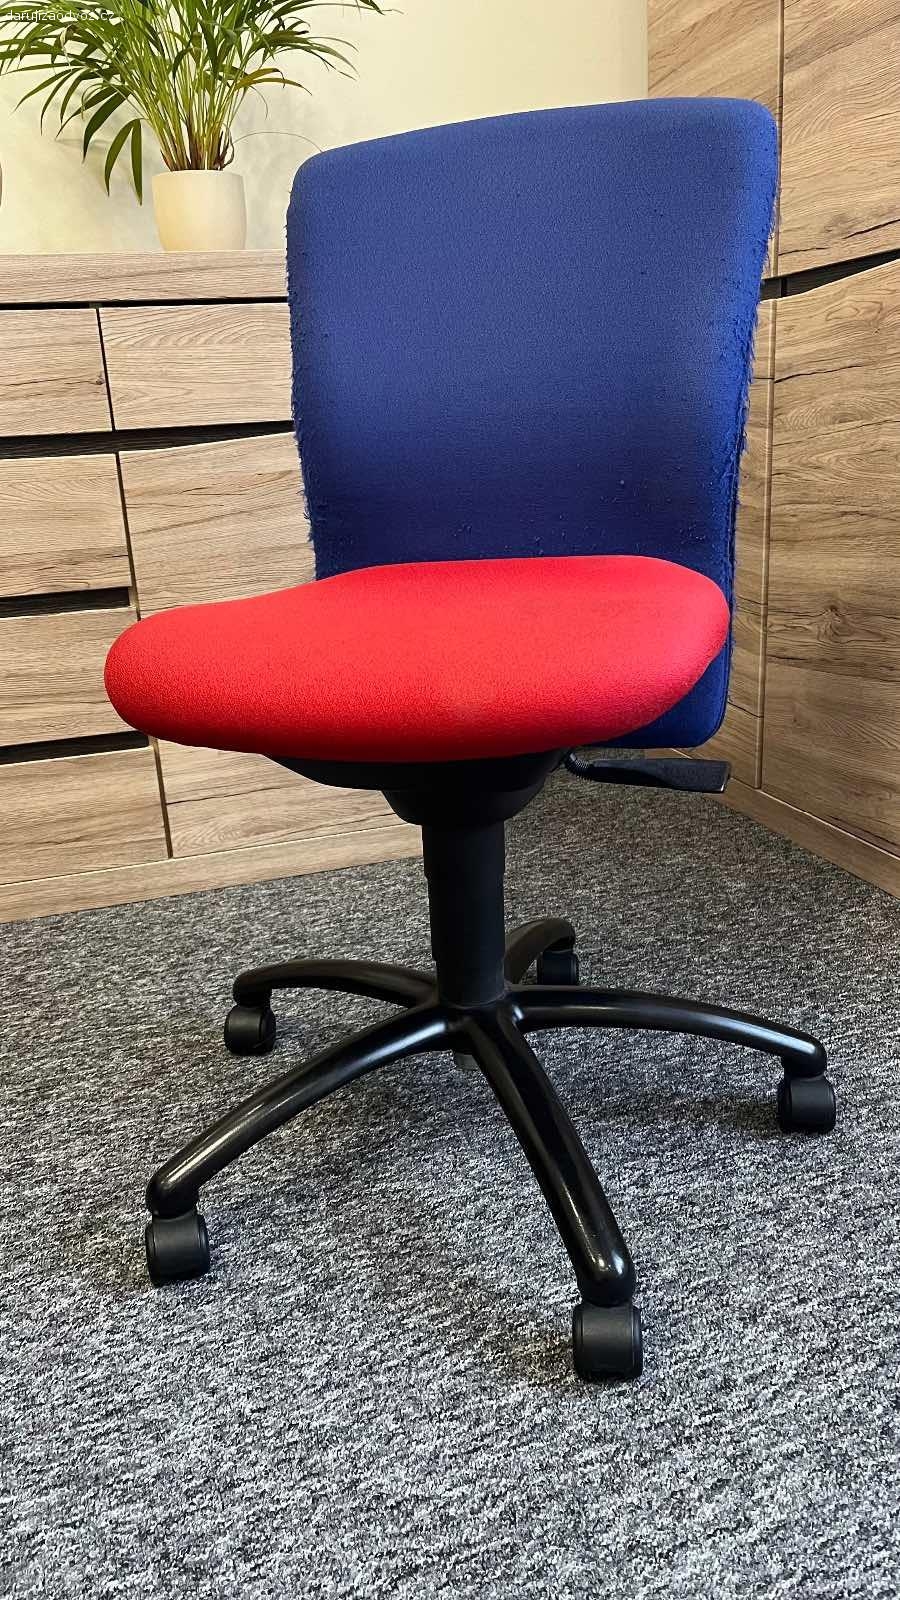 Daruji kancelářskou židli. Starší kancelářská židle. Nerozviklana, ale poničené polstrování. Ulomená páka na nastavování výšky.